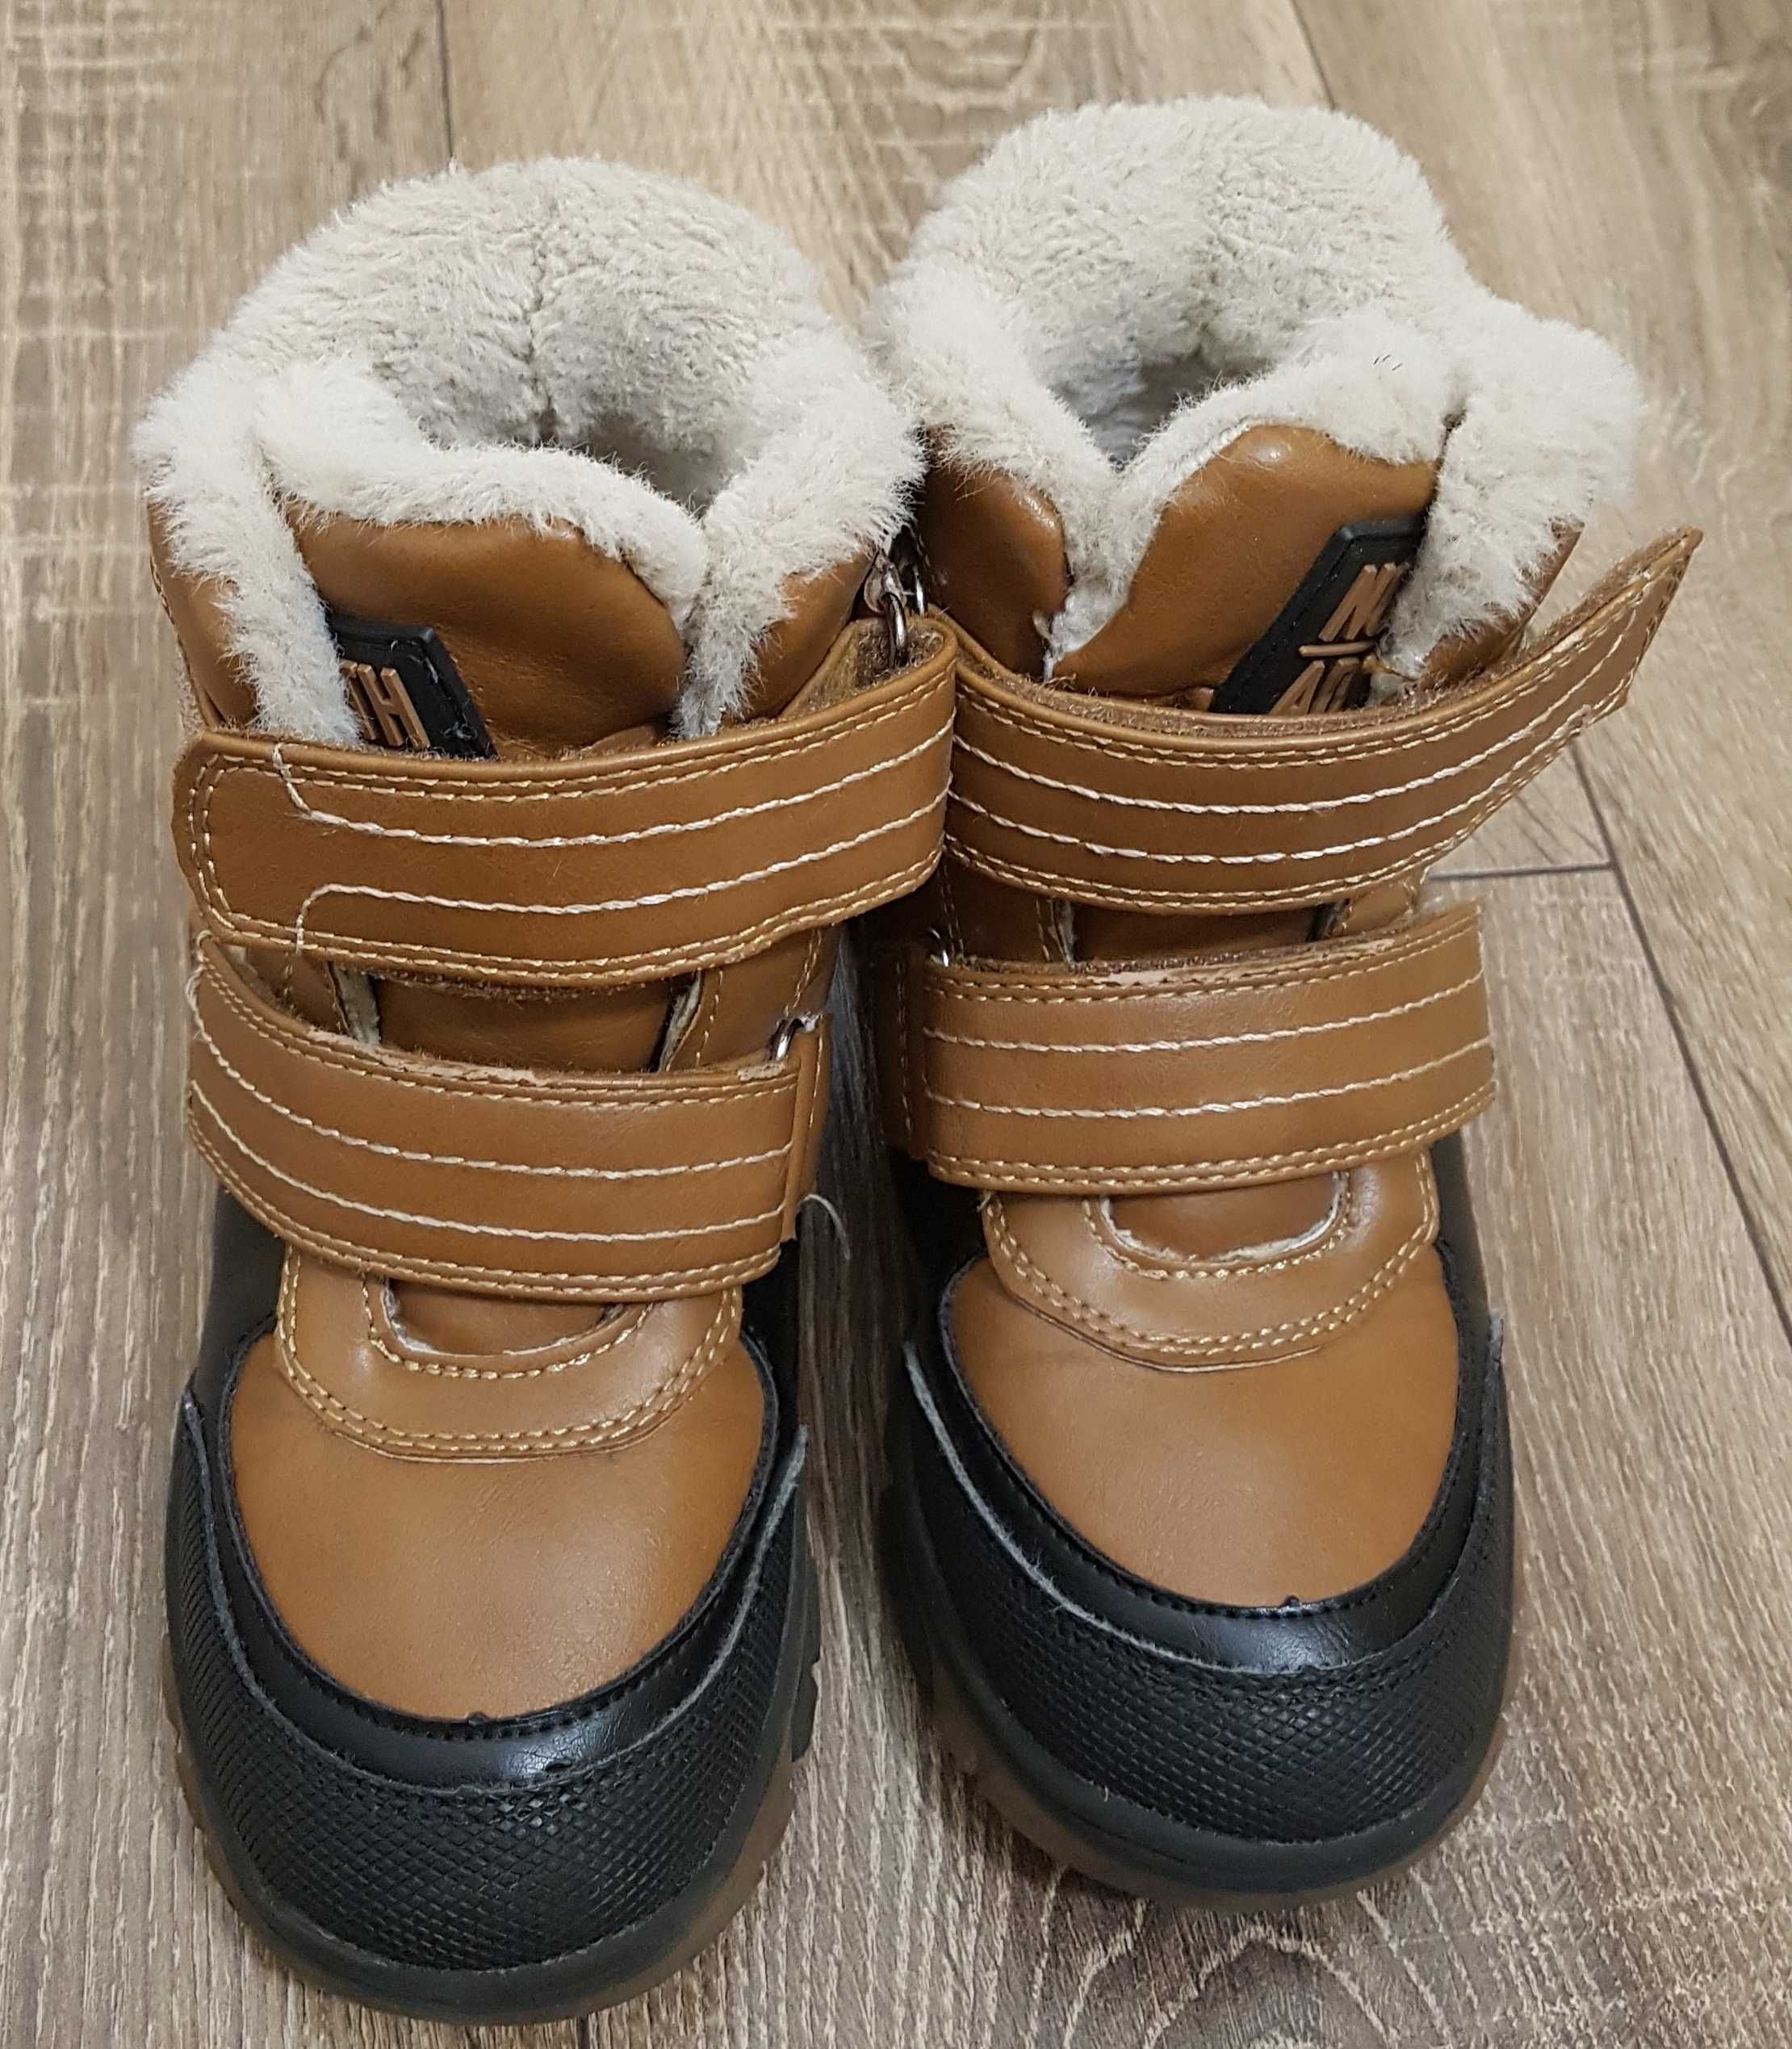 Buty zimowe ocieplane rozmiar 30, długość wkładki 19,5cm COOL CLUB